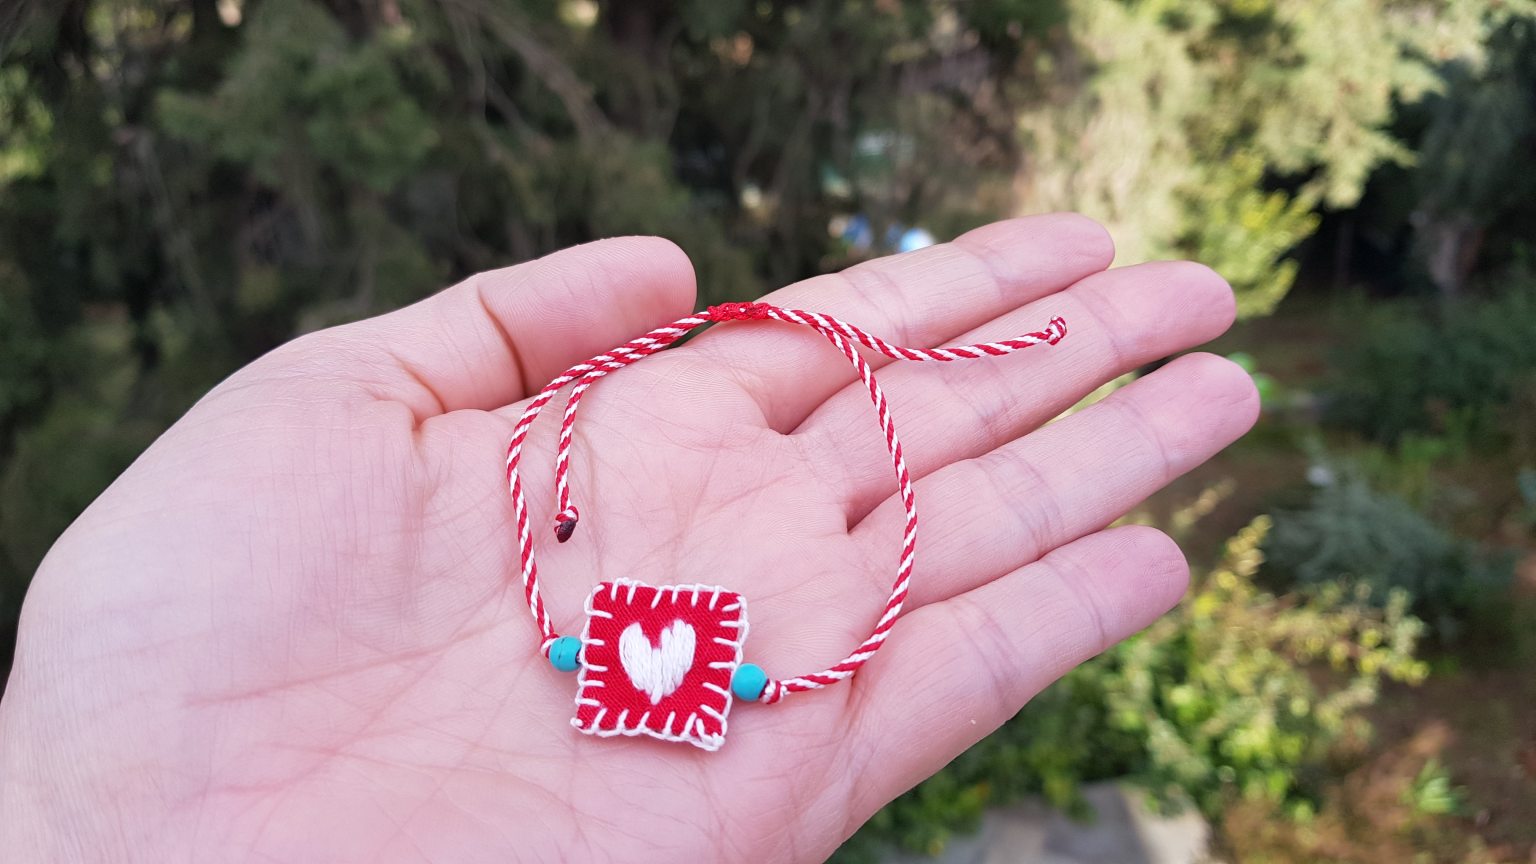 White heart "martis" bracelet